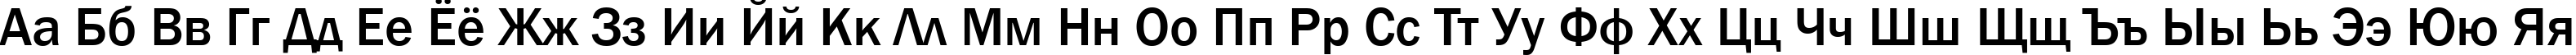 Пример написания русского алфавита шрифтом font157